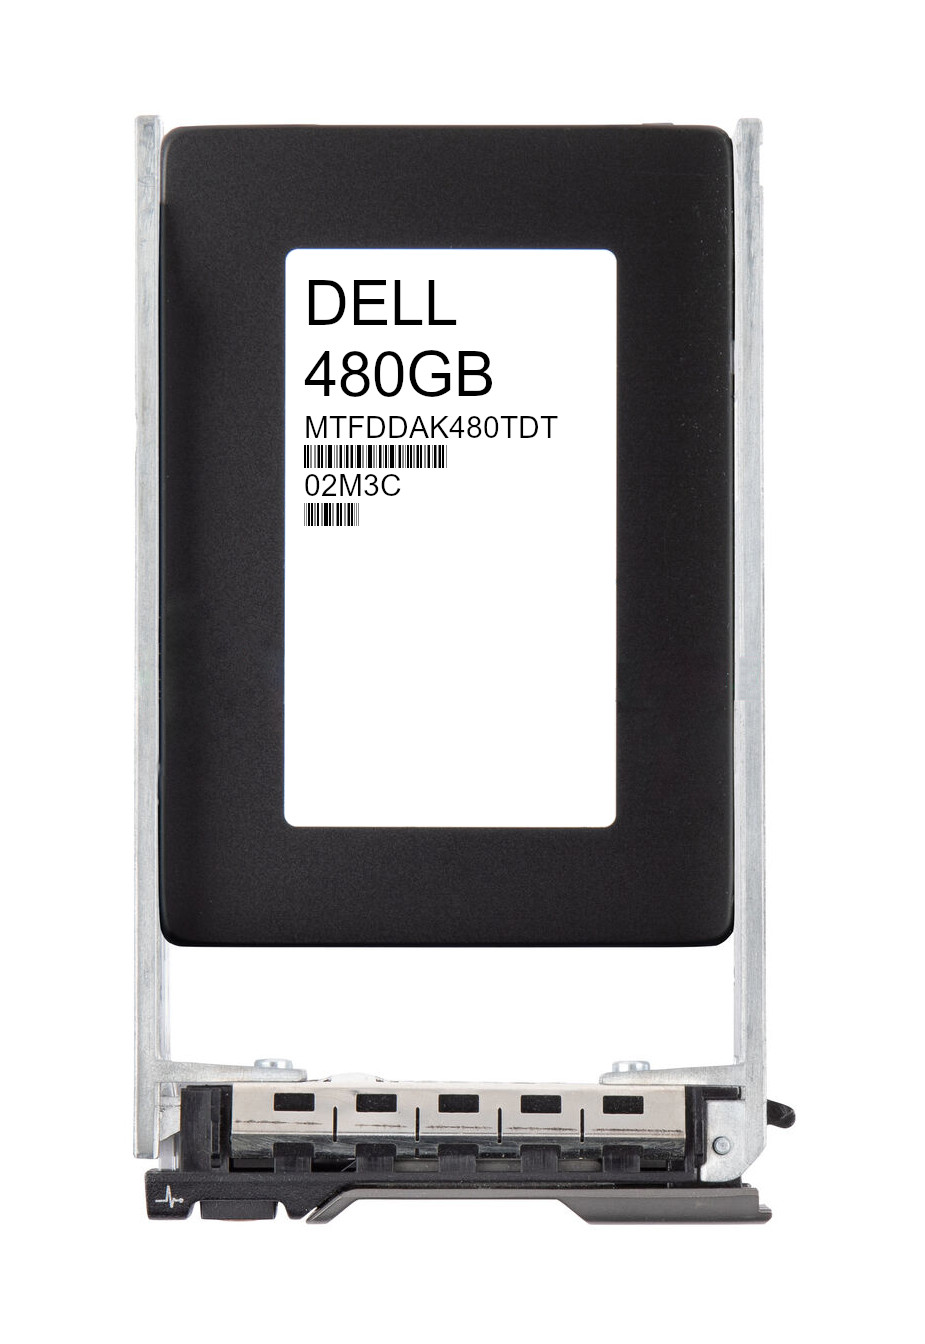 Dell EMC Micron 480GB MTFDDAK480TDT SSD 512e SATA 6Gb/s 2.5" 02M3C - Click Image to Close